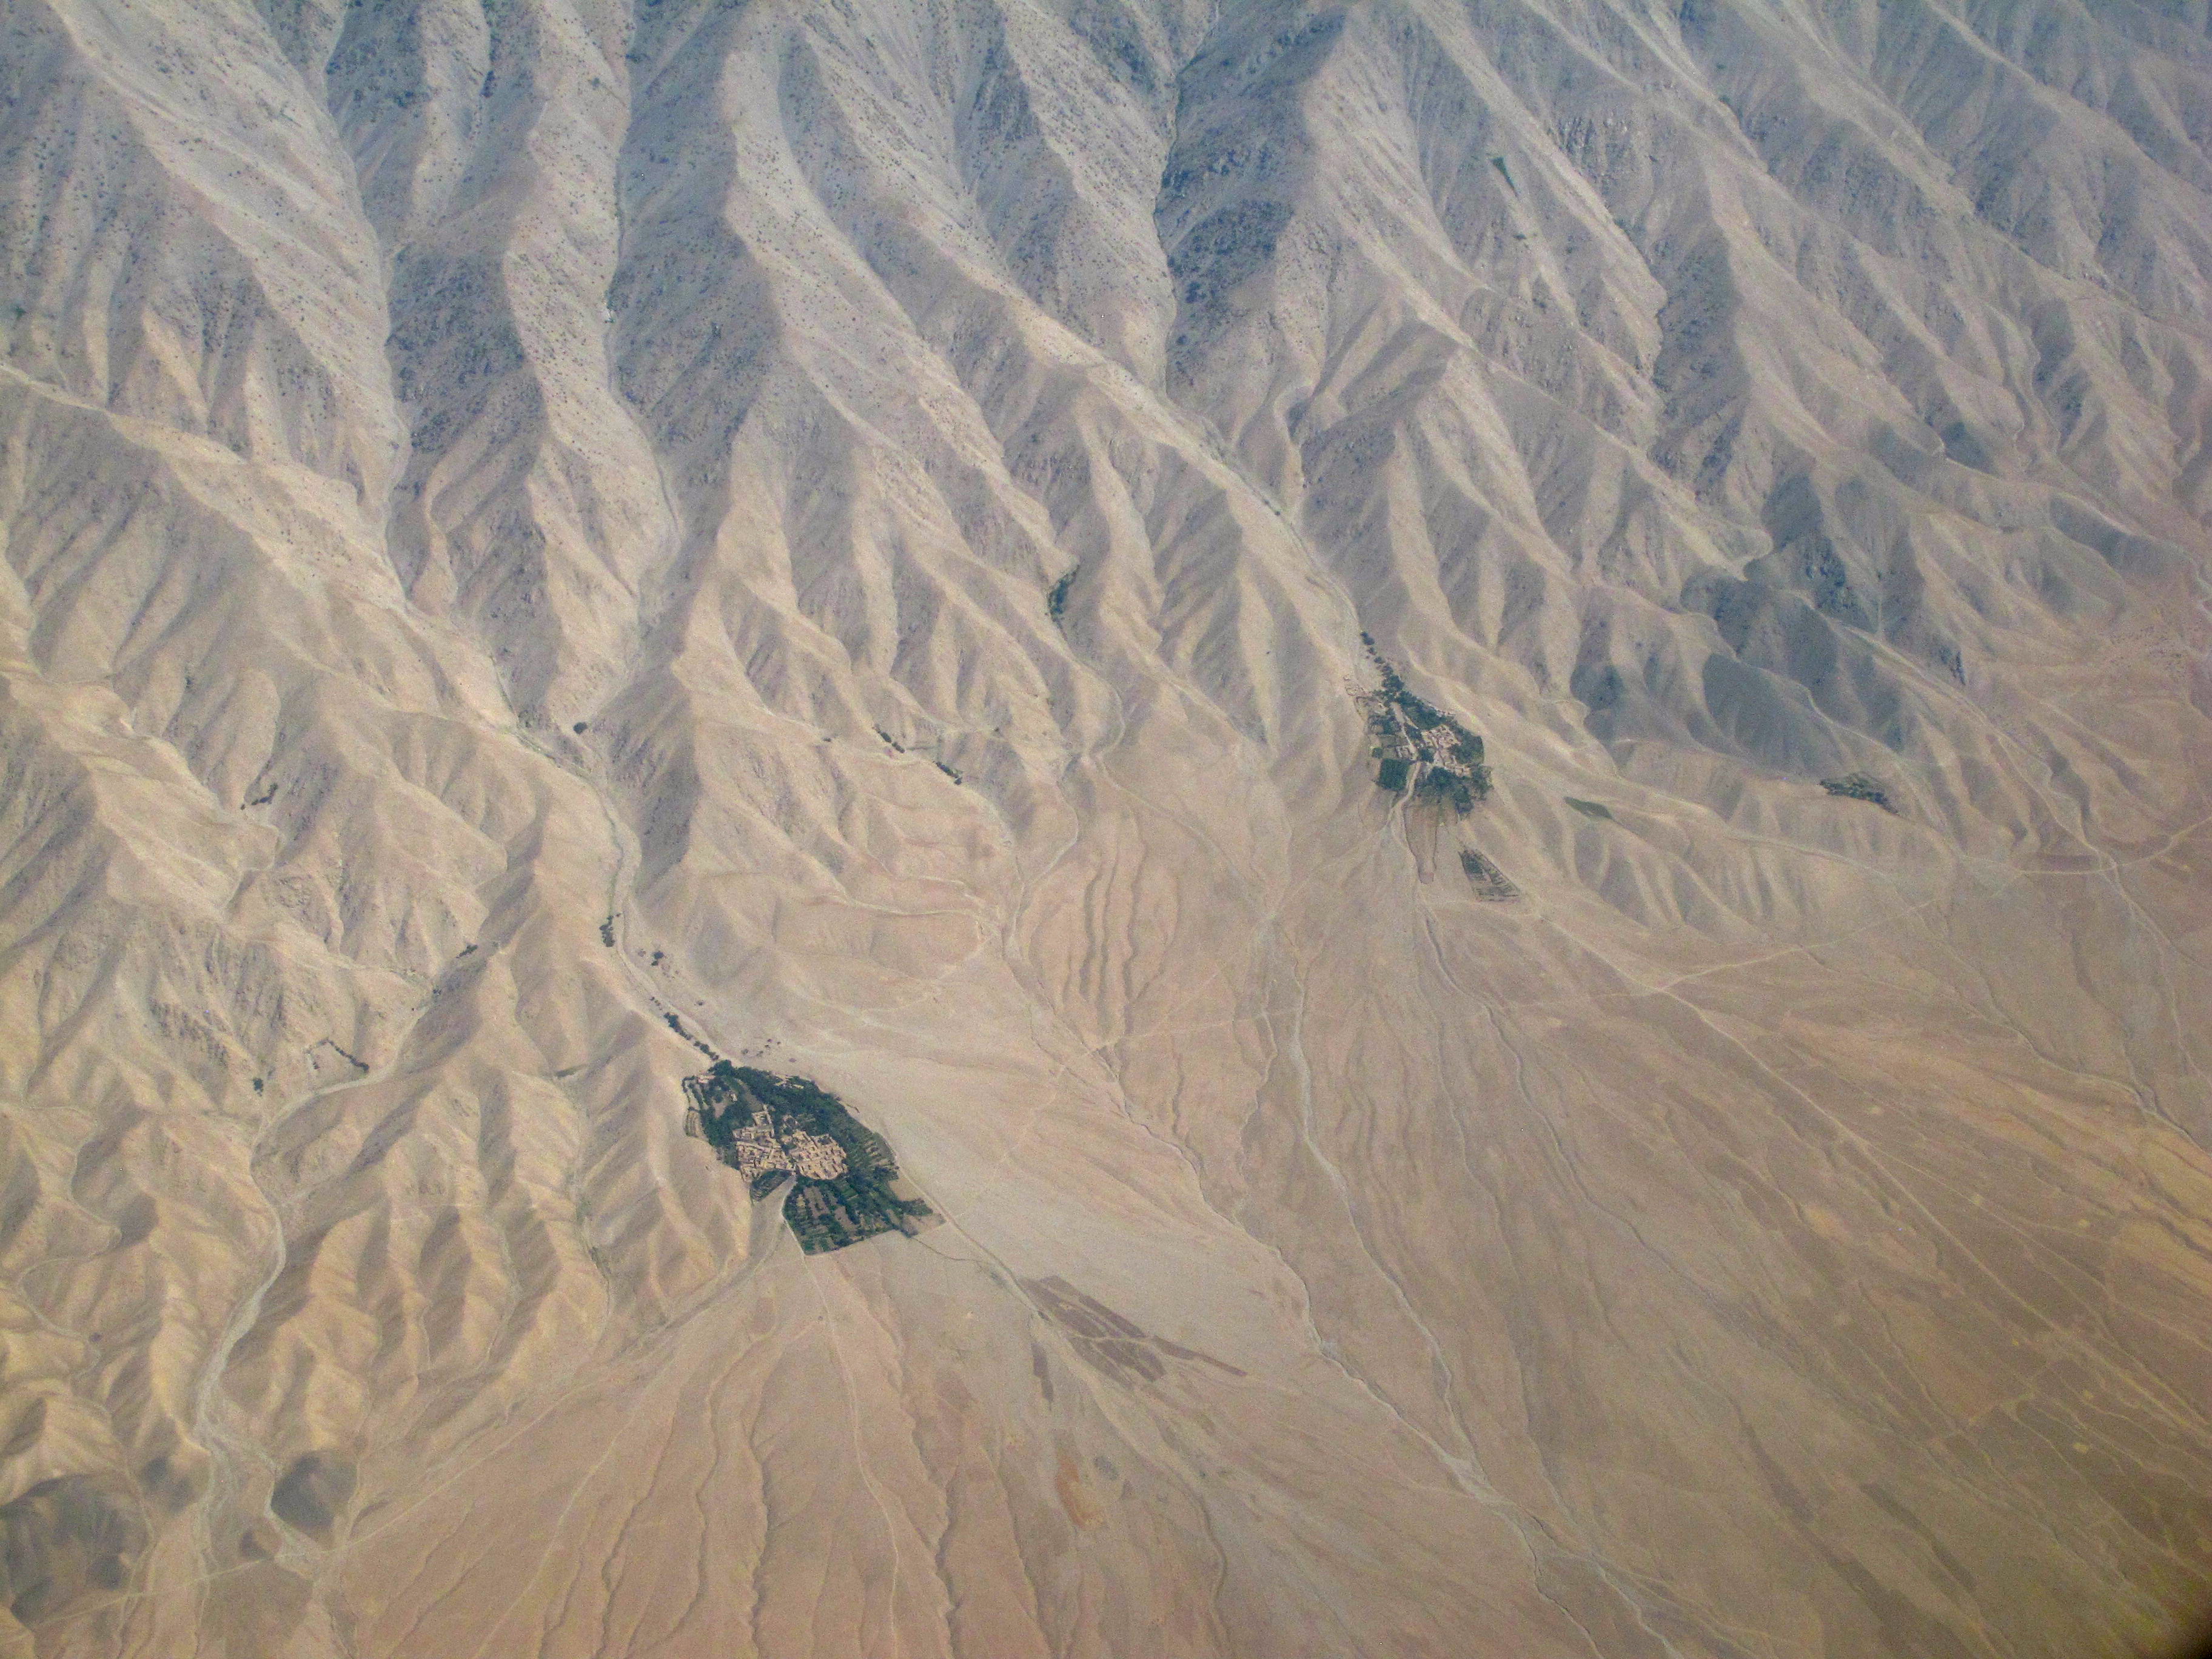 Afghanistan Landscapes